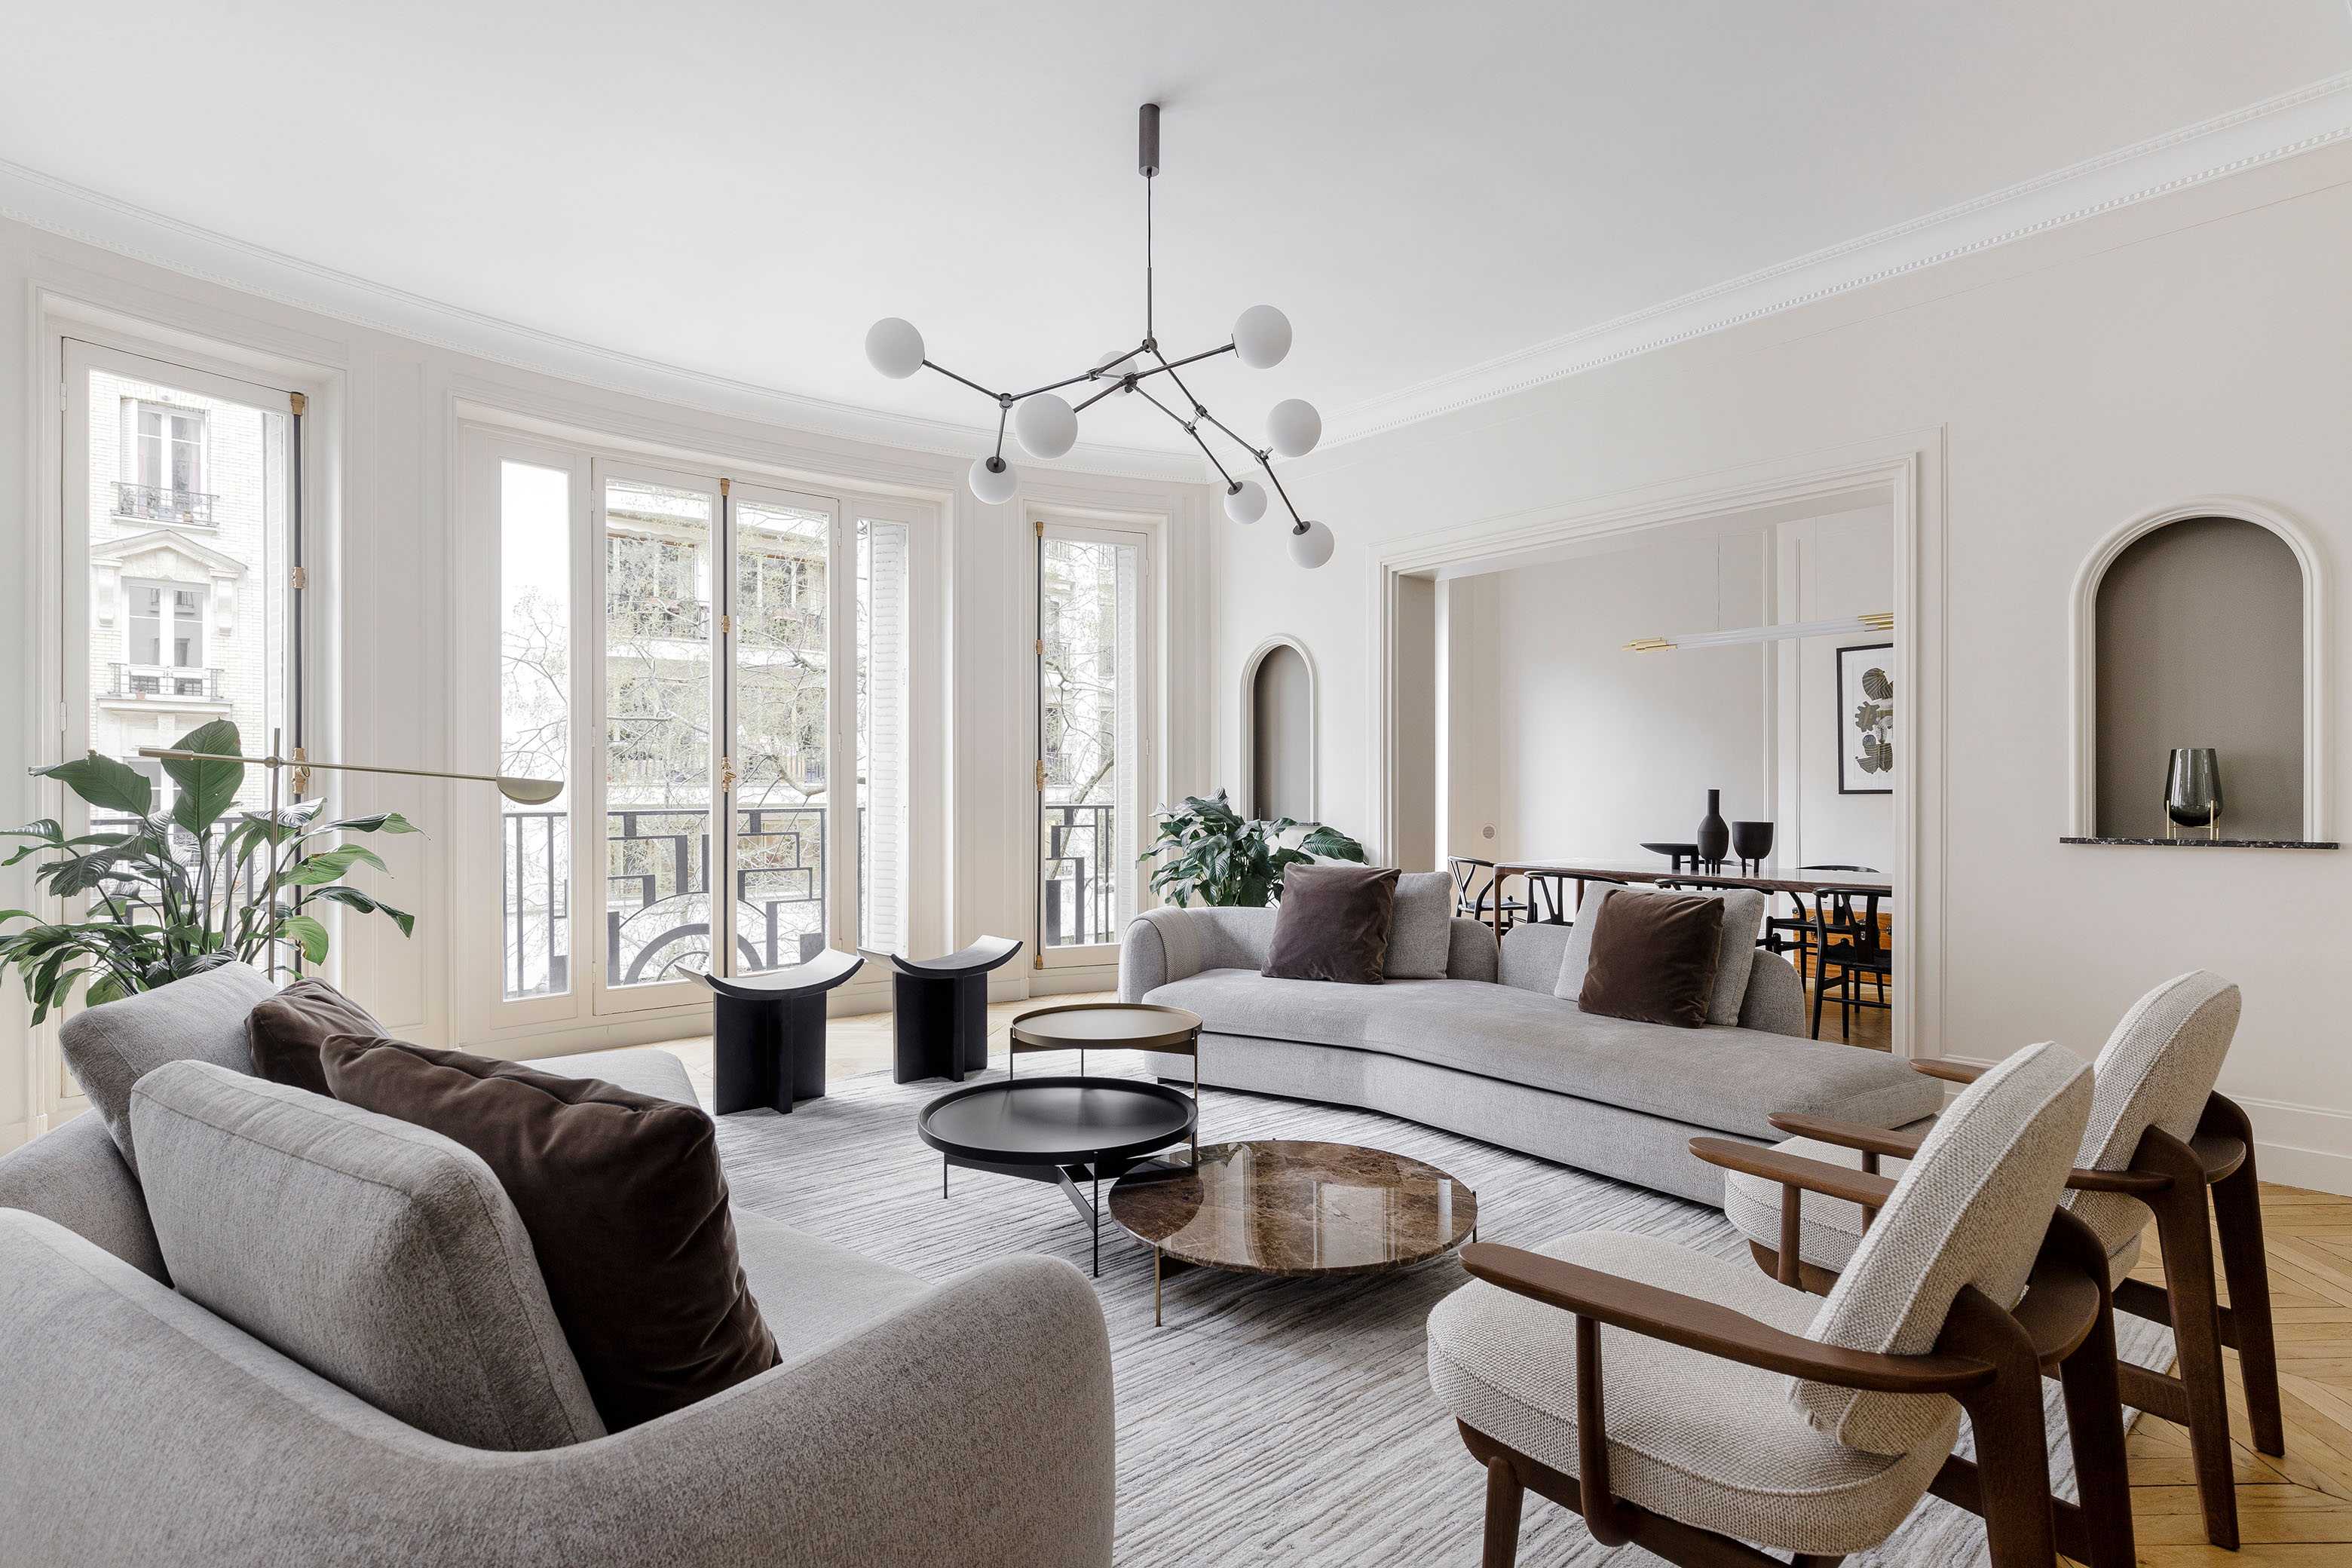 Redesign your interior with Créateurs d'intérieur Paris